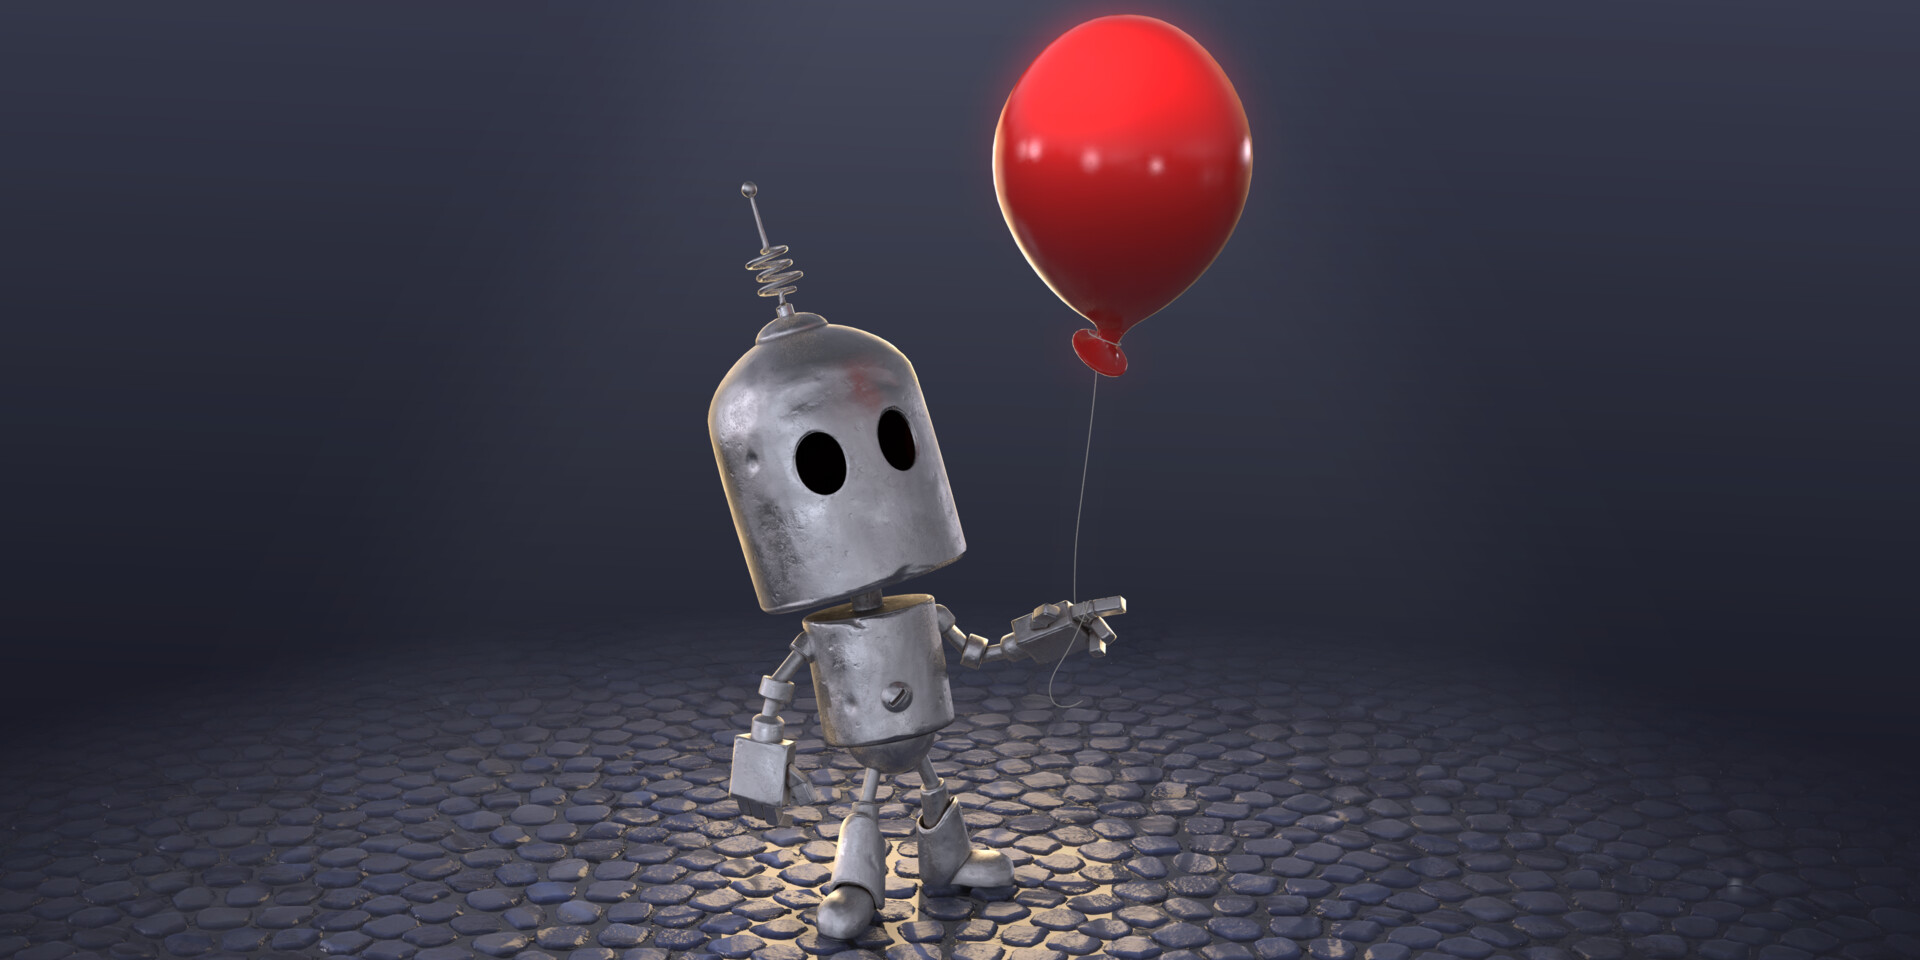 ArtStation - The Red Balloon